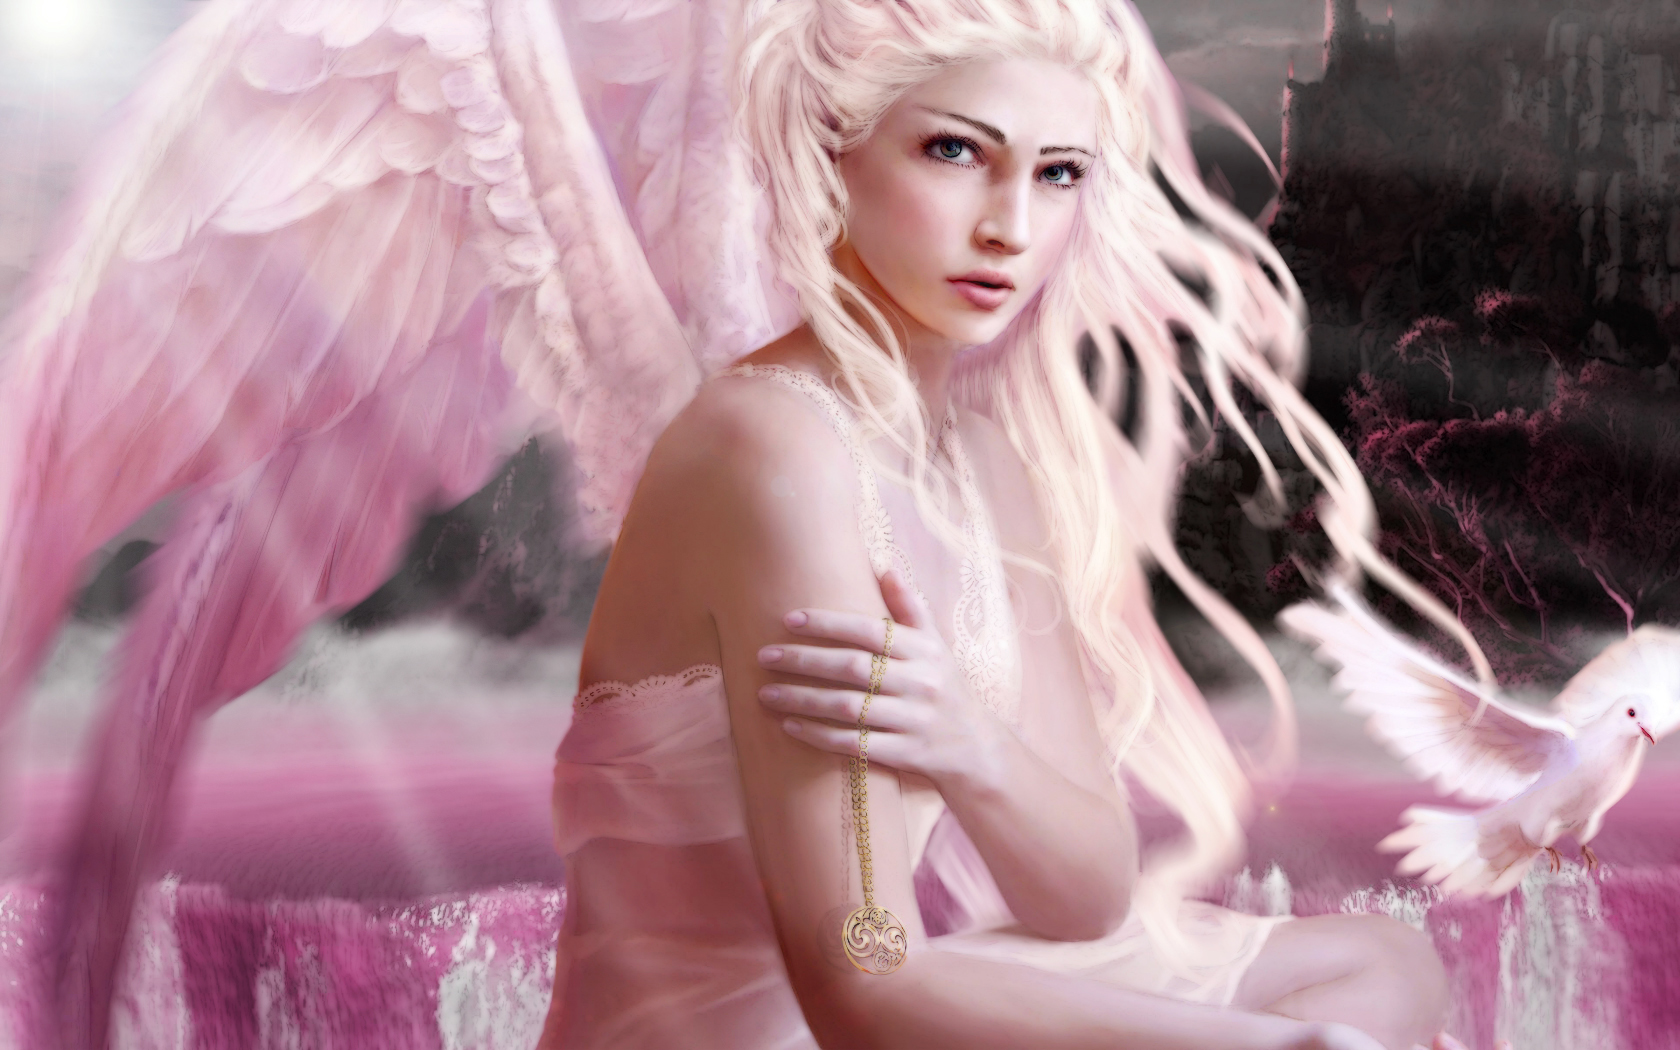 Teen girls angels models. Девушка - ангел. Красивая женщина ангел. Девушка с крыльями. Ангел фэнтези.